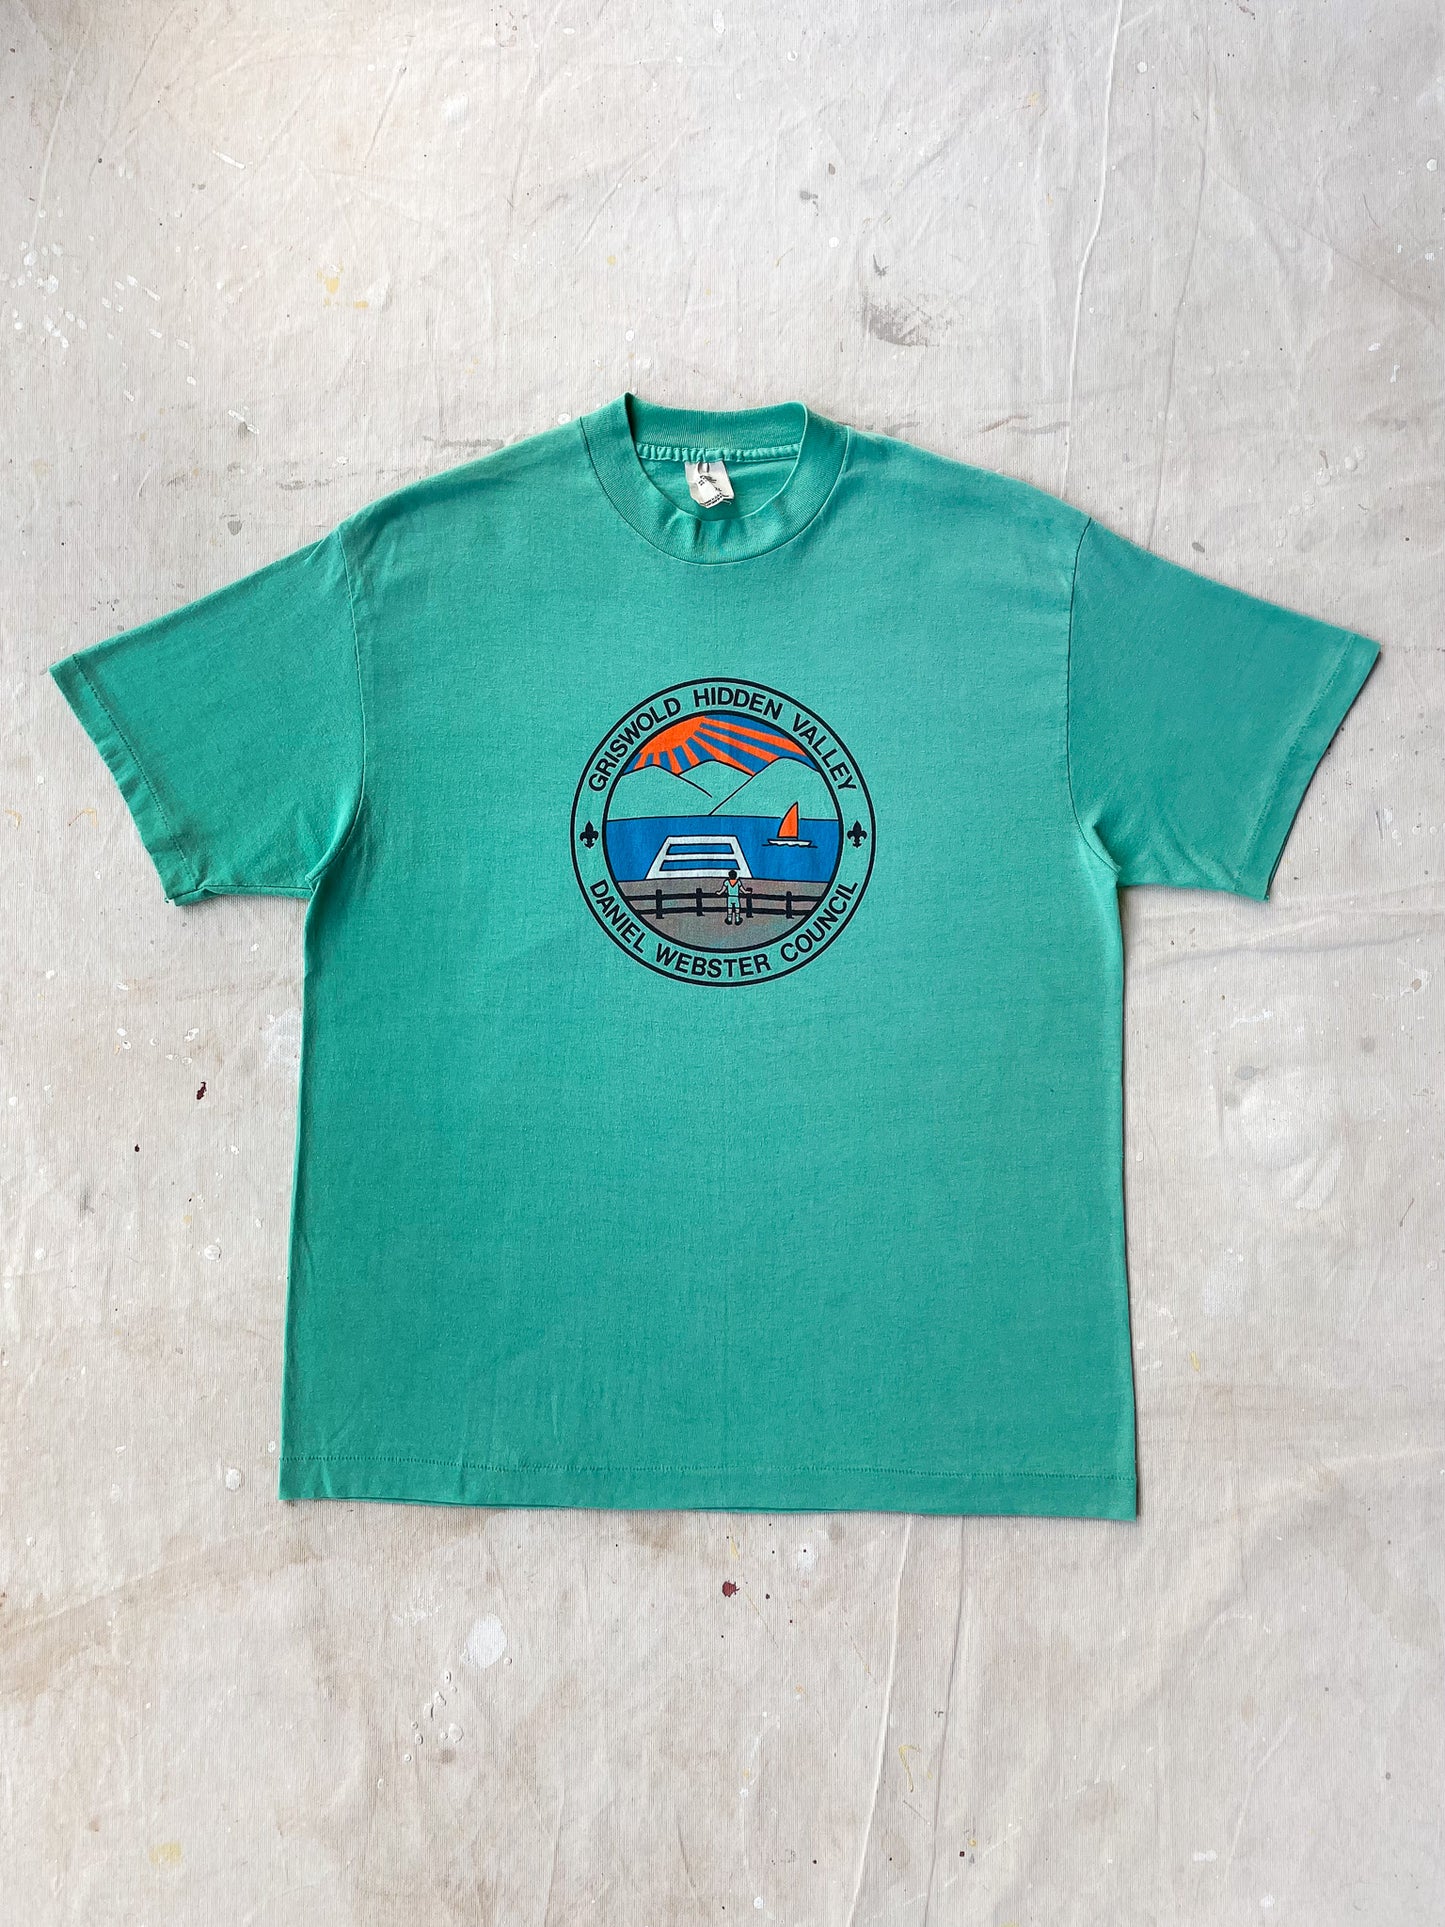 Griswold Hidden Valley T-Shirt—[XL]